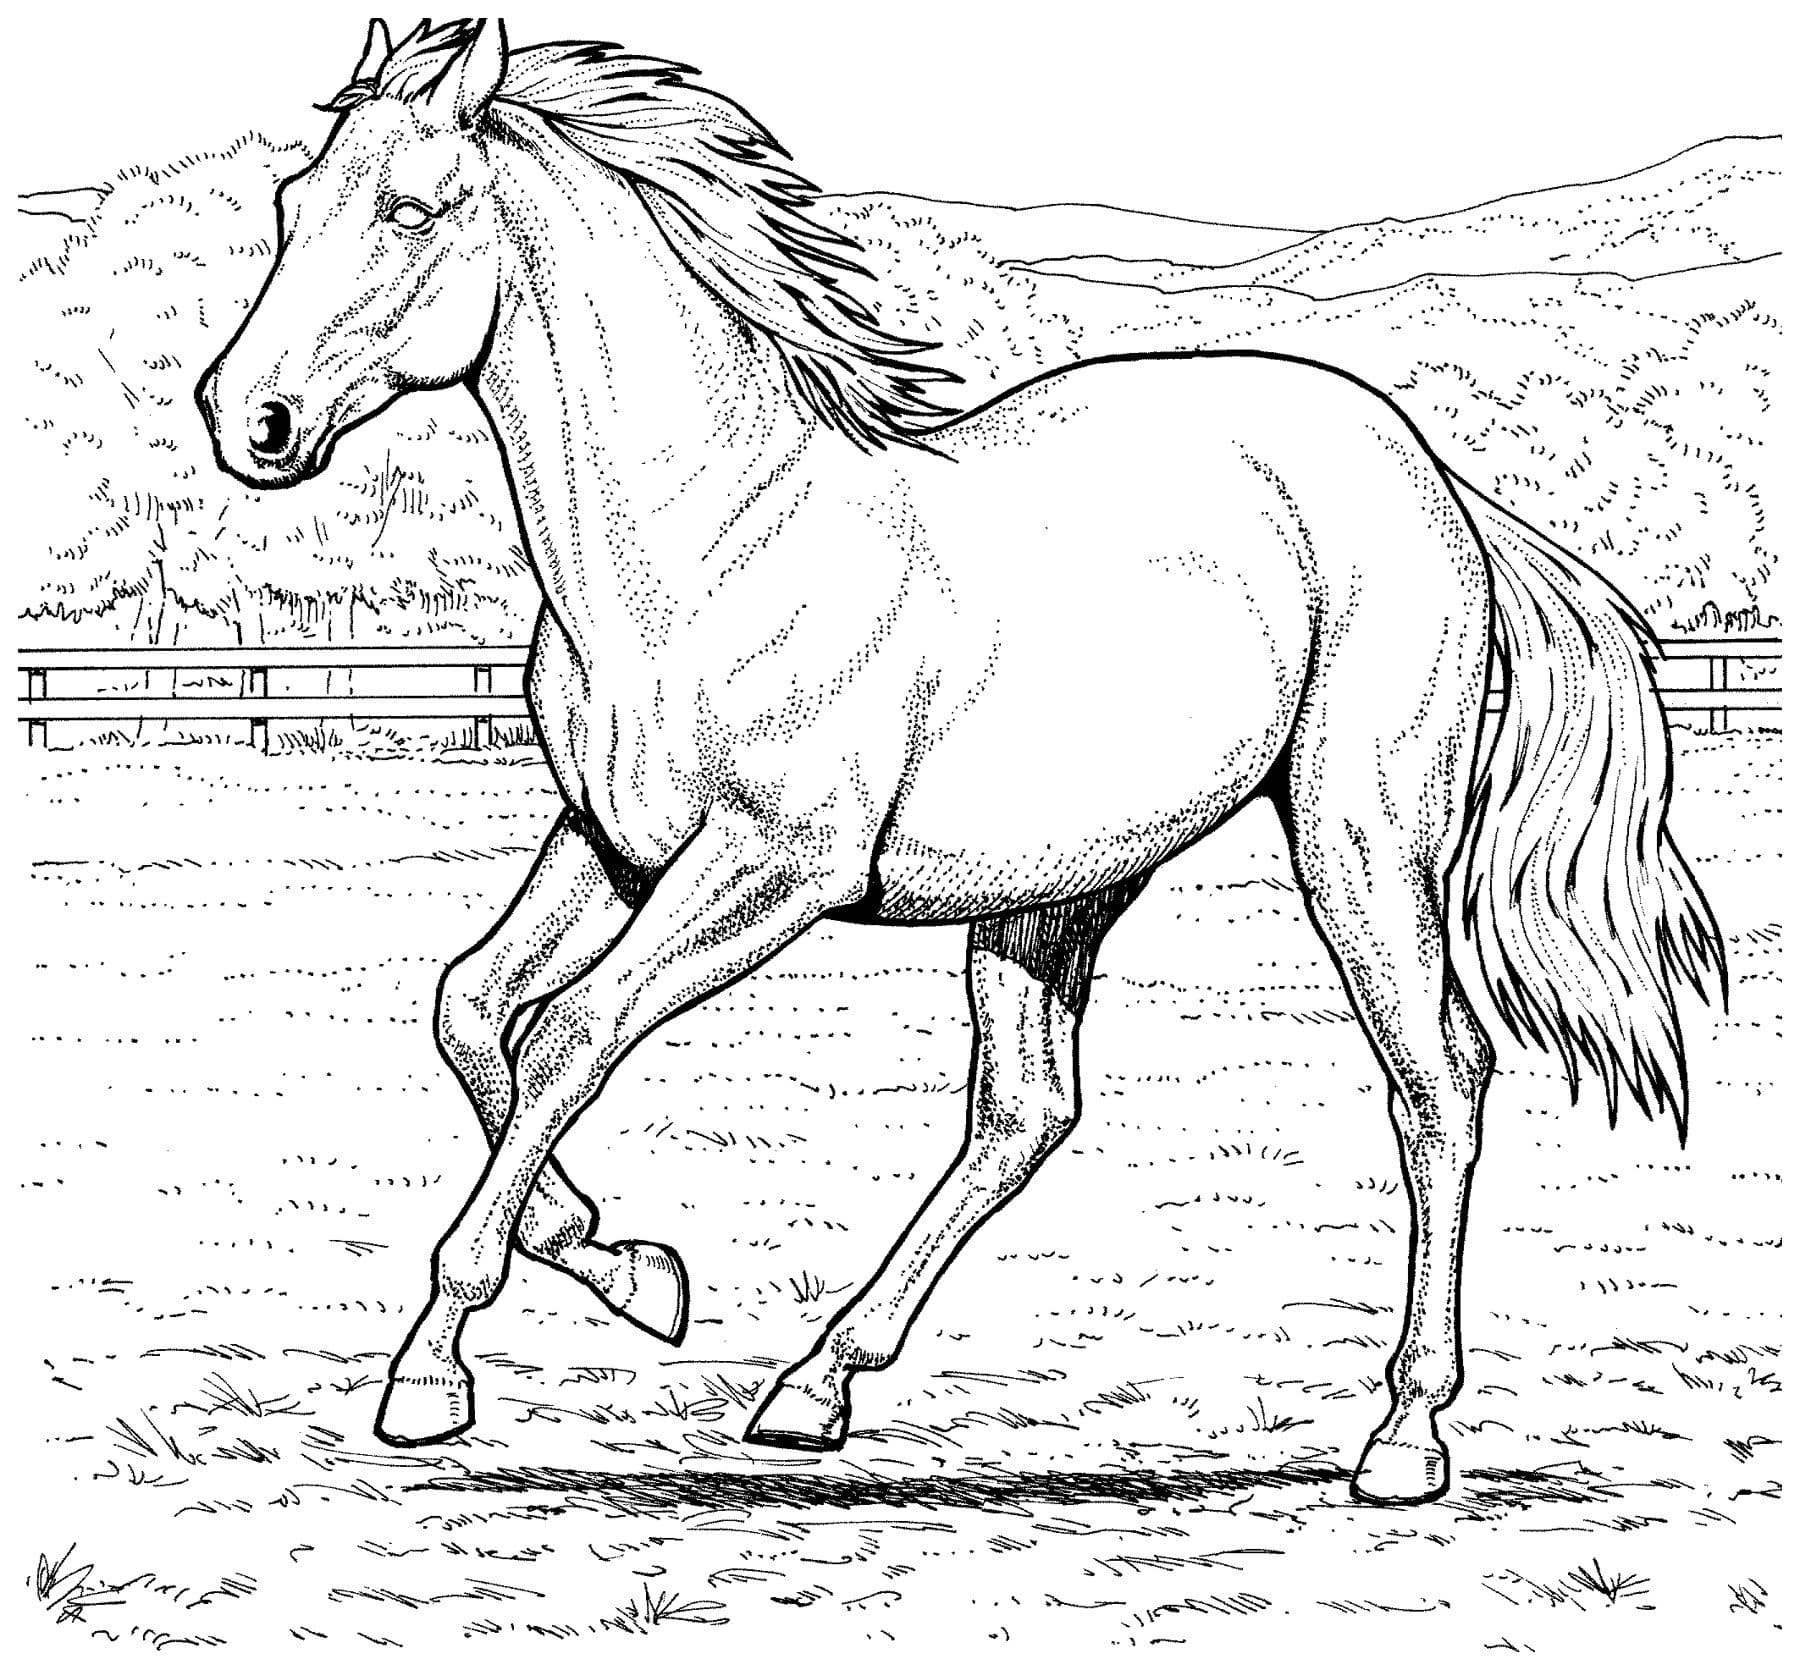 Раскраски с лошадьми для девочек